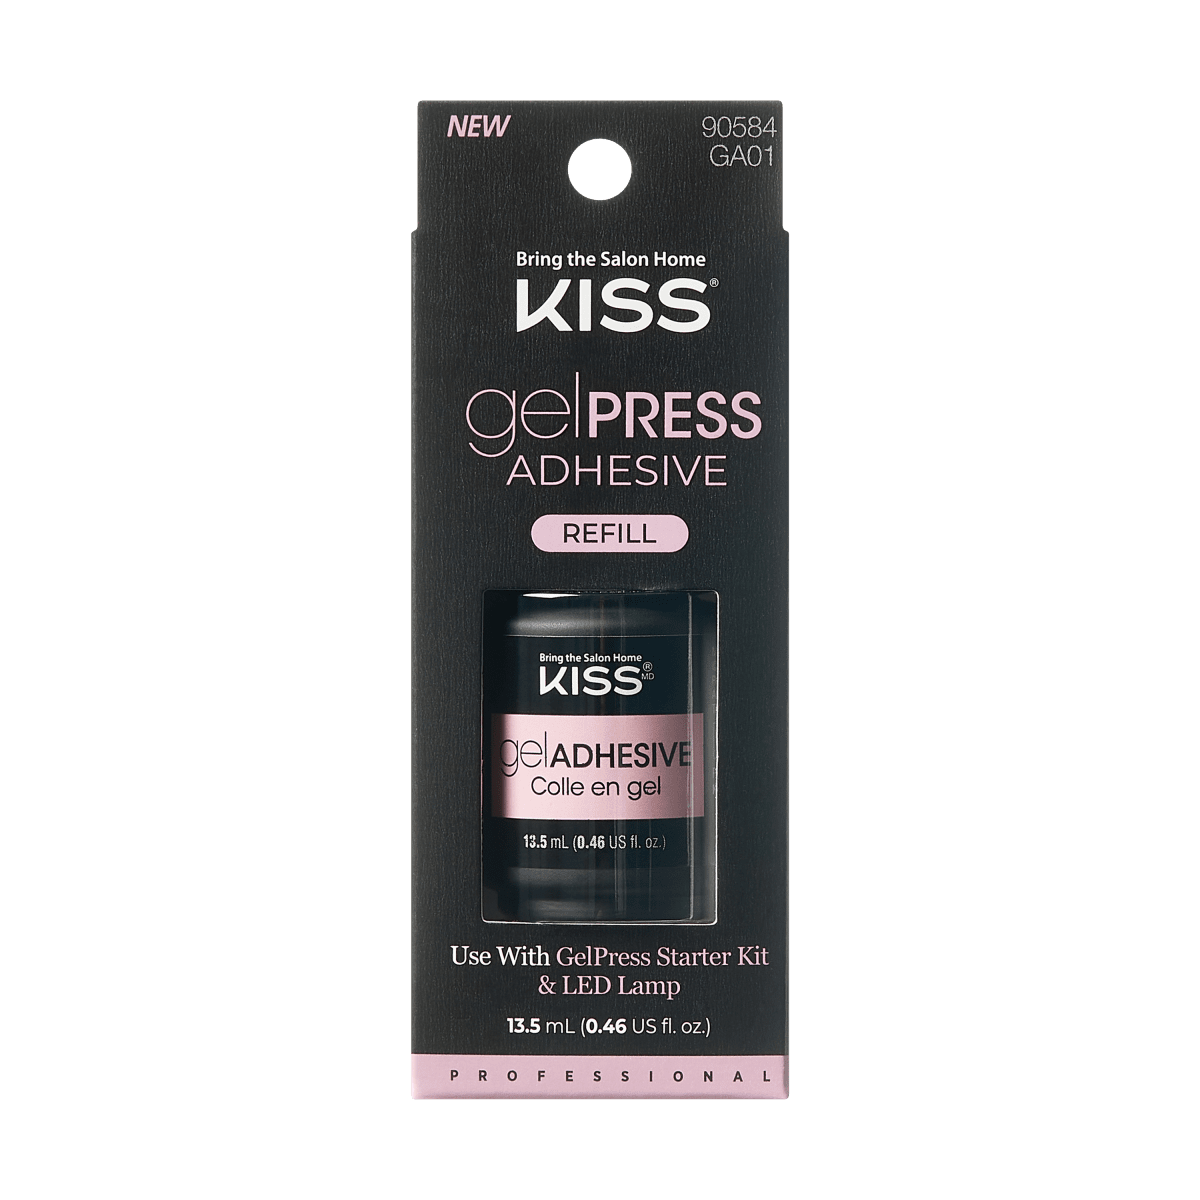 KISS gelPRESS Adhesive Refill, Nail Extension System, 13.5 mL (0.46 US fl.  oz.) – KISS USA